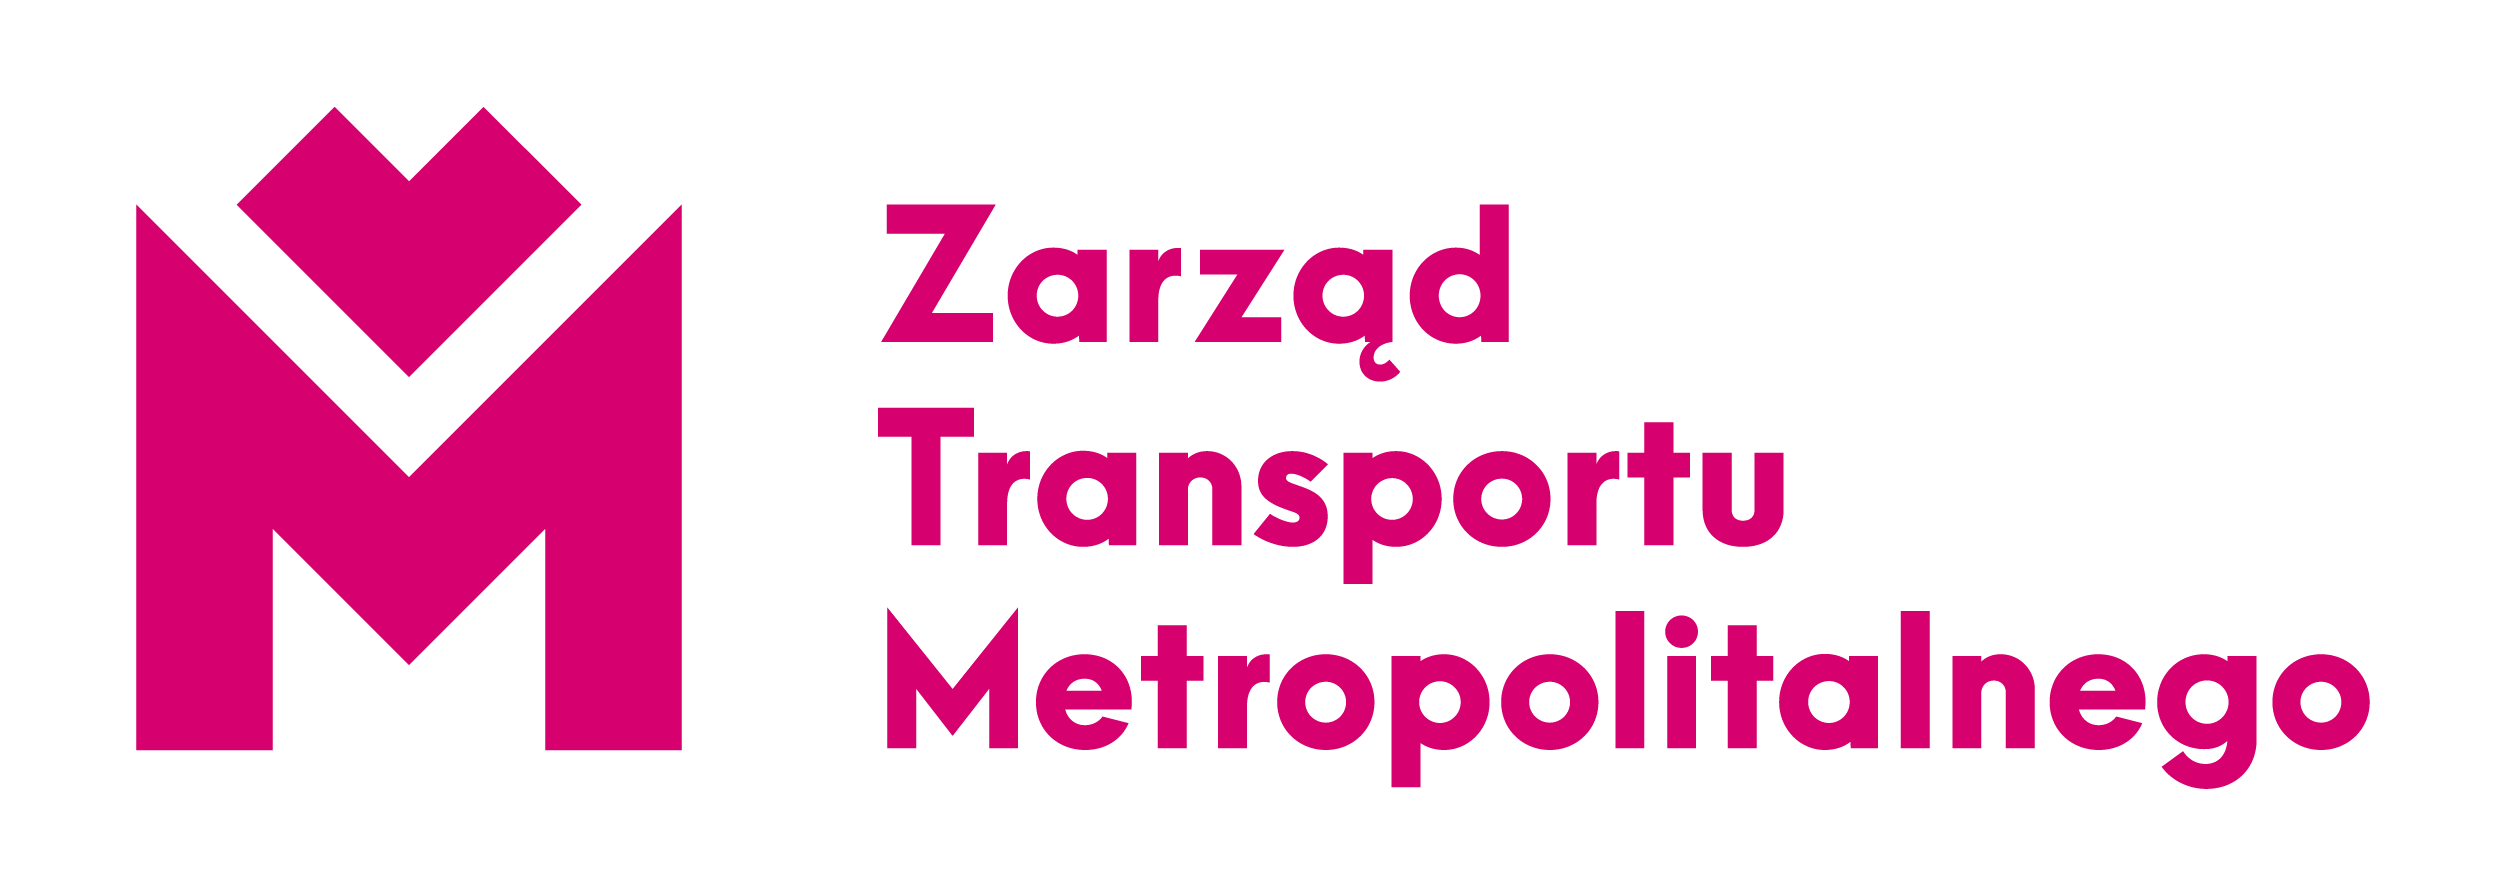 Zarząd Transportu Metropolitalnego . Otwiera się w nowym oknie